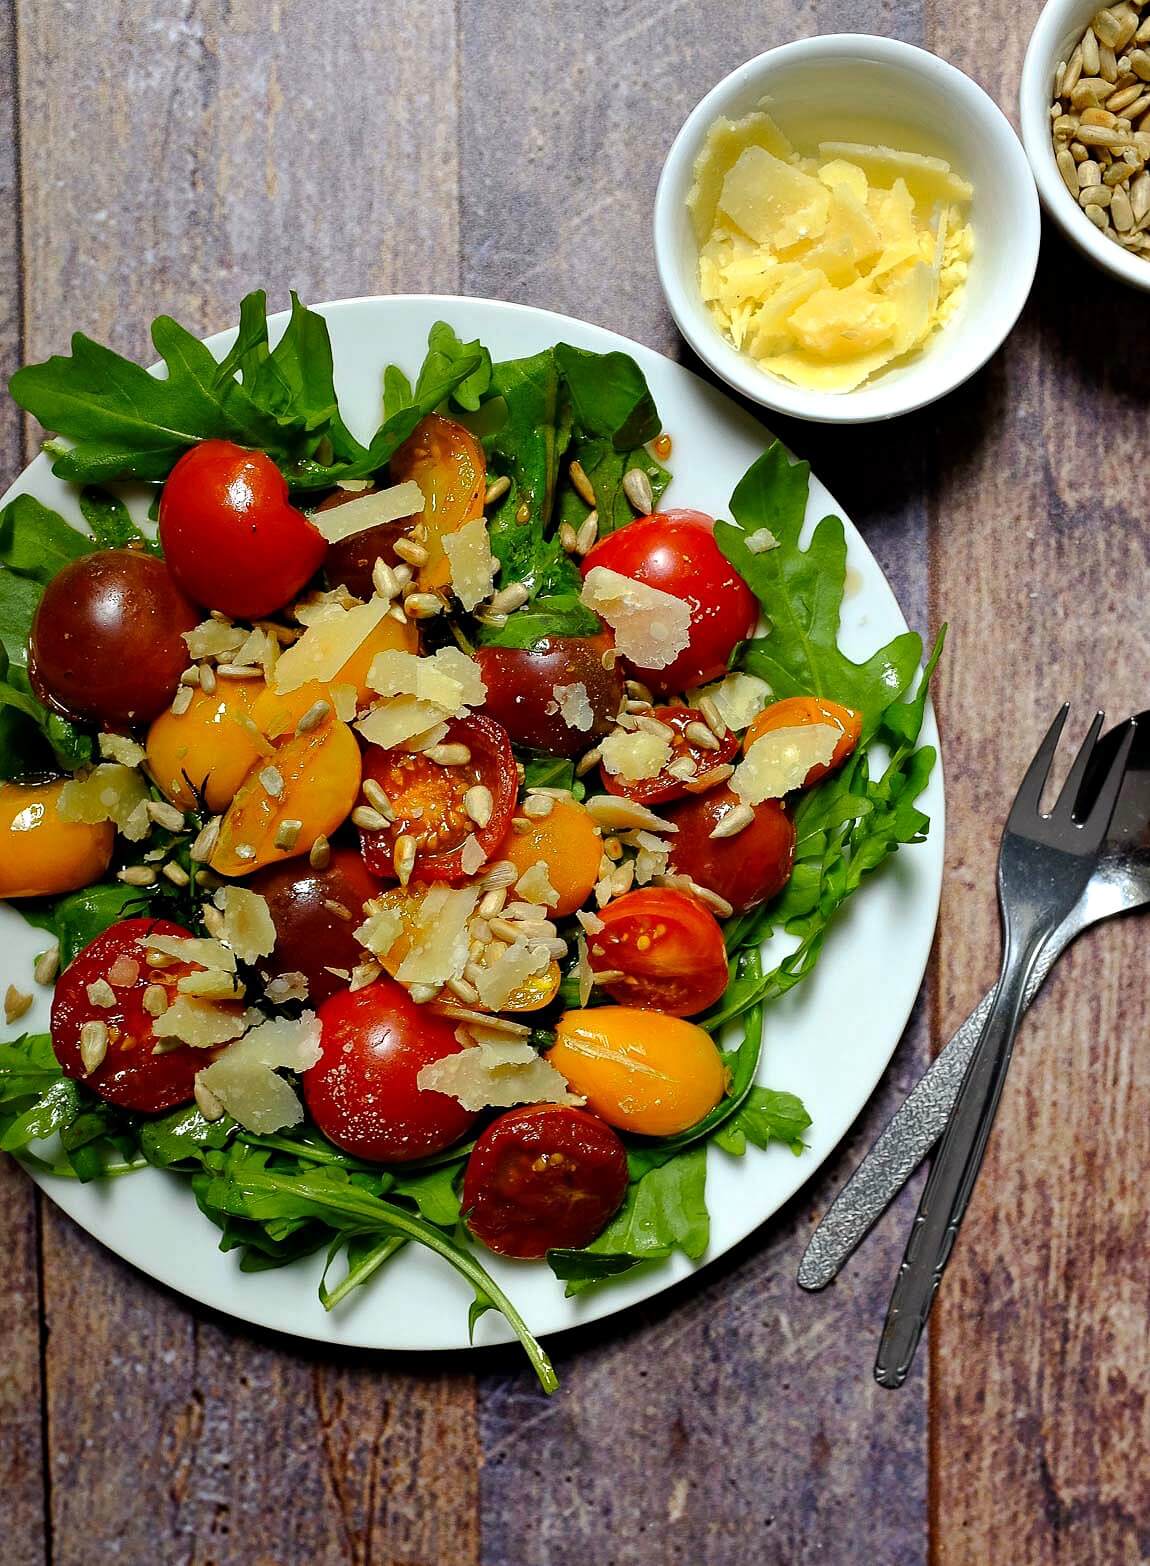 Dieser 15 - Minuten-Salat mit karamellisierten Tomaten, Rucola und Parmesan ist ein aromatischer Gaumenschmaus. Weniger Aufwand - tolles Ergebnis